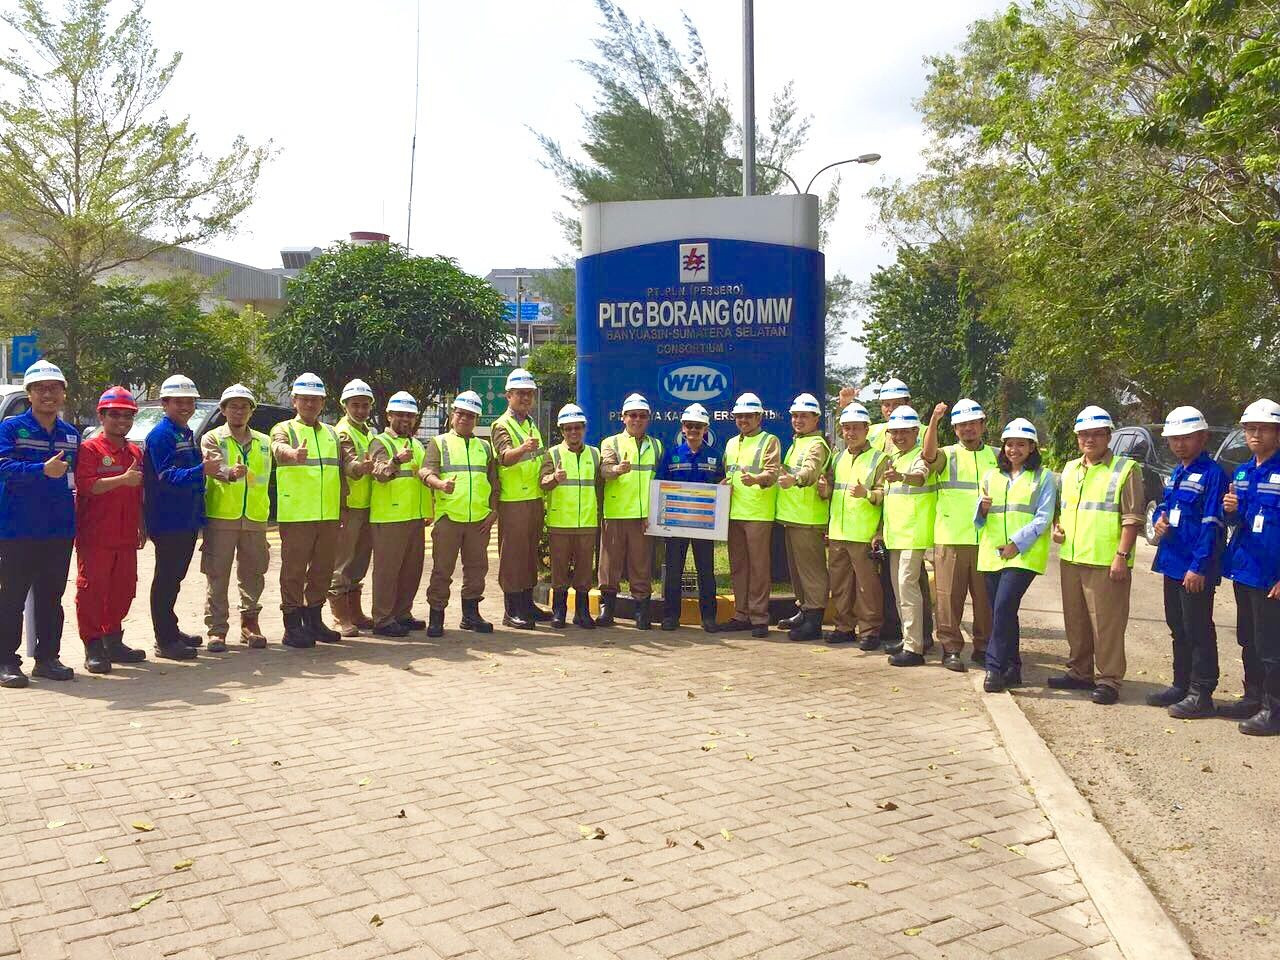 Safety Patrol at Gas Power Plant Borang 60 MW, South Sumatera Image